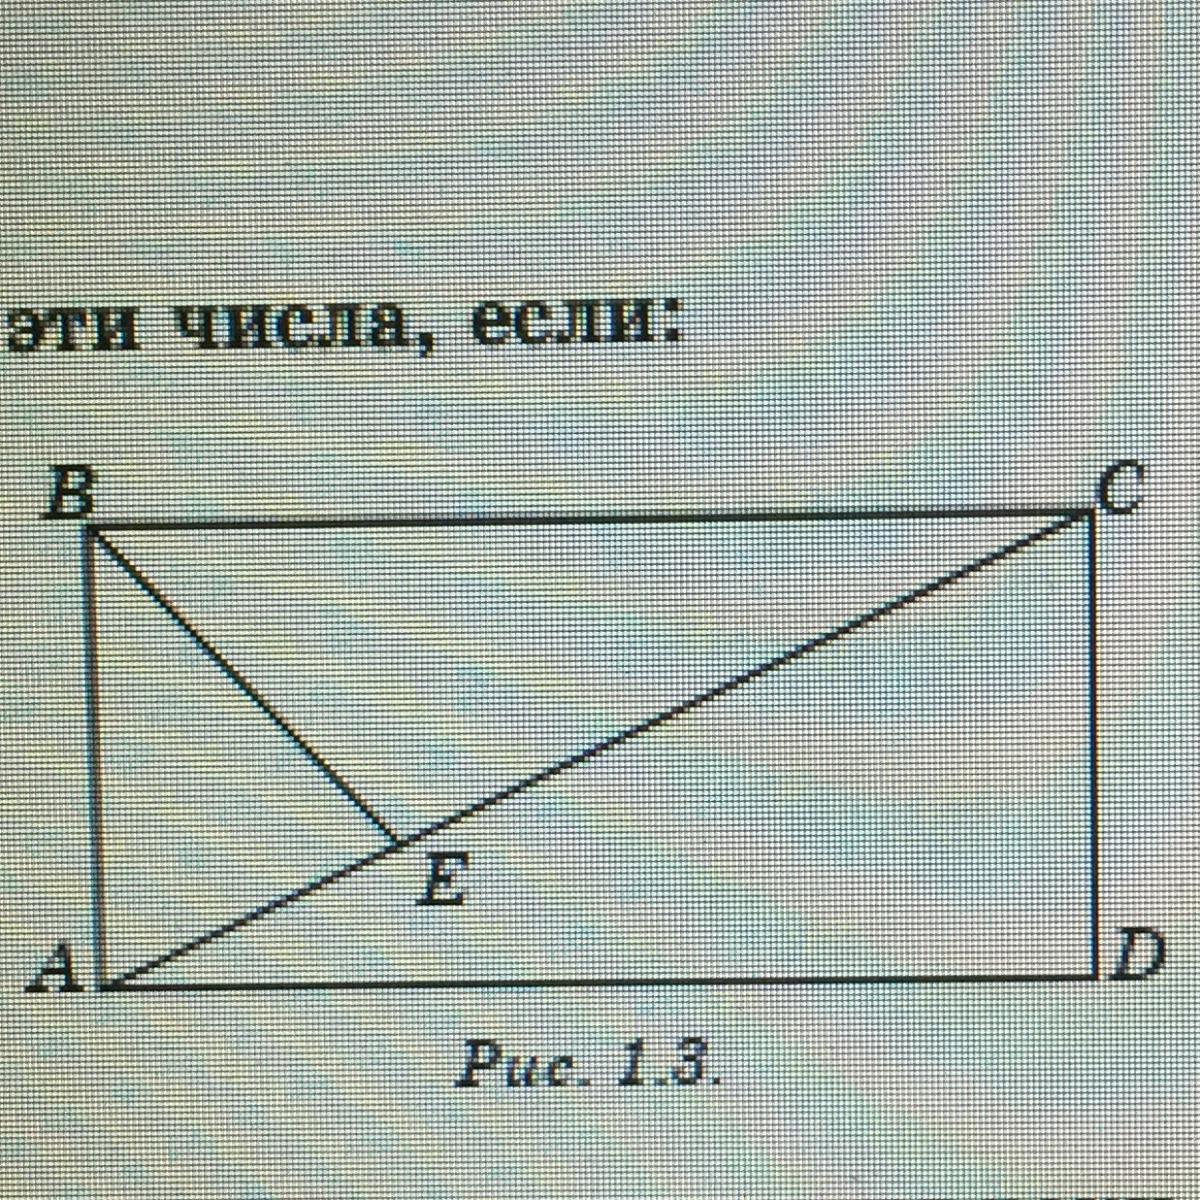 Где длина у прямоугольника. Площадь треугольника равна 15 см а ширина 3 см. Длина у прямоугольника вертикальная или горизонтальная. ABCD - прямоугольник Найдите p (MDN) B M D. Ширина прямоугольника abcd